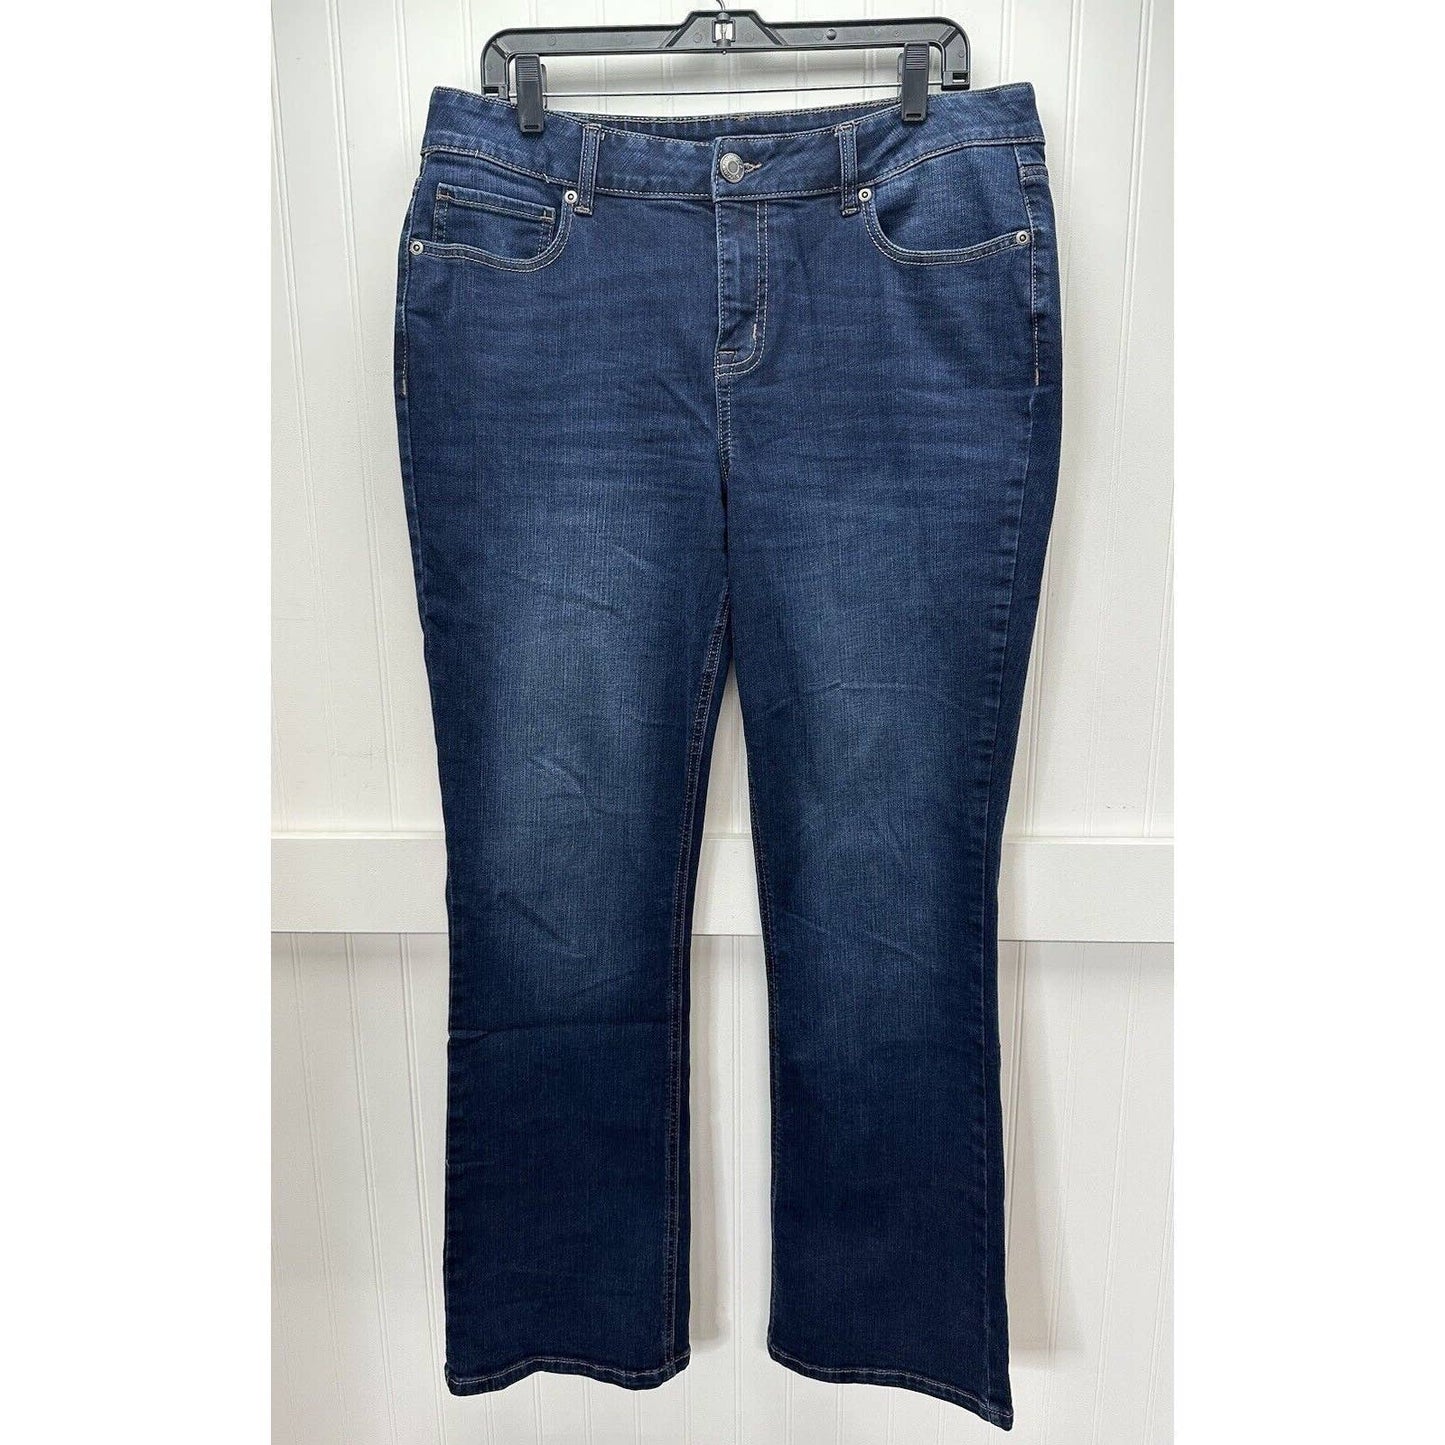 Maurices Midrise Bootcut Jeans Womens 14 Regular Stretch Blue Denim Dark Wash